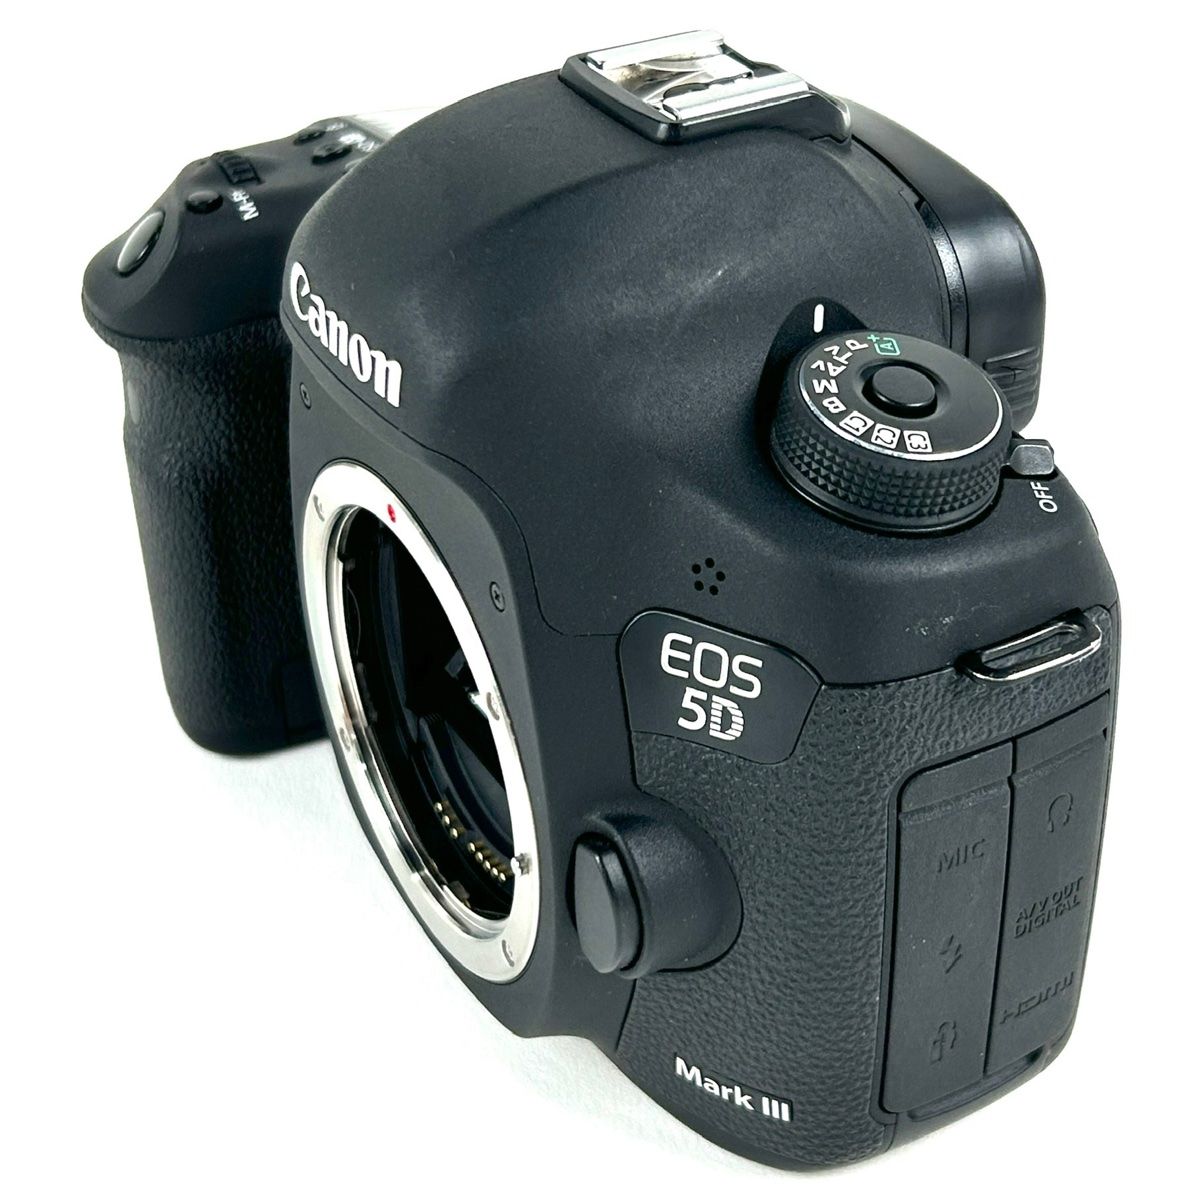 キヤノン Canon EOS 5D Mark III EF 24-105 F4L IS USM キット 